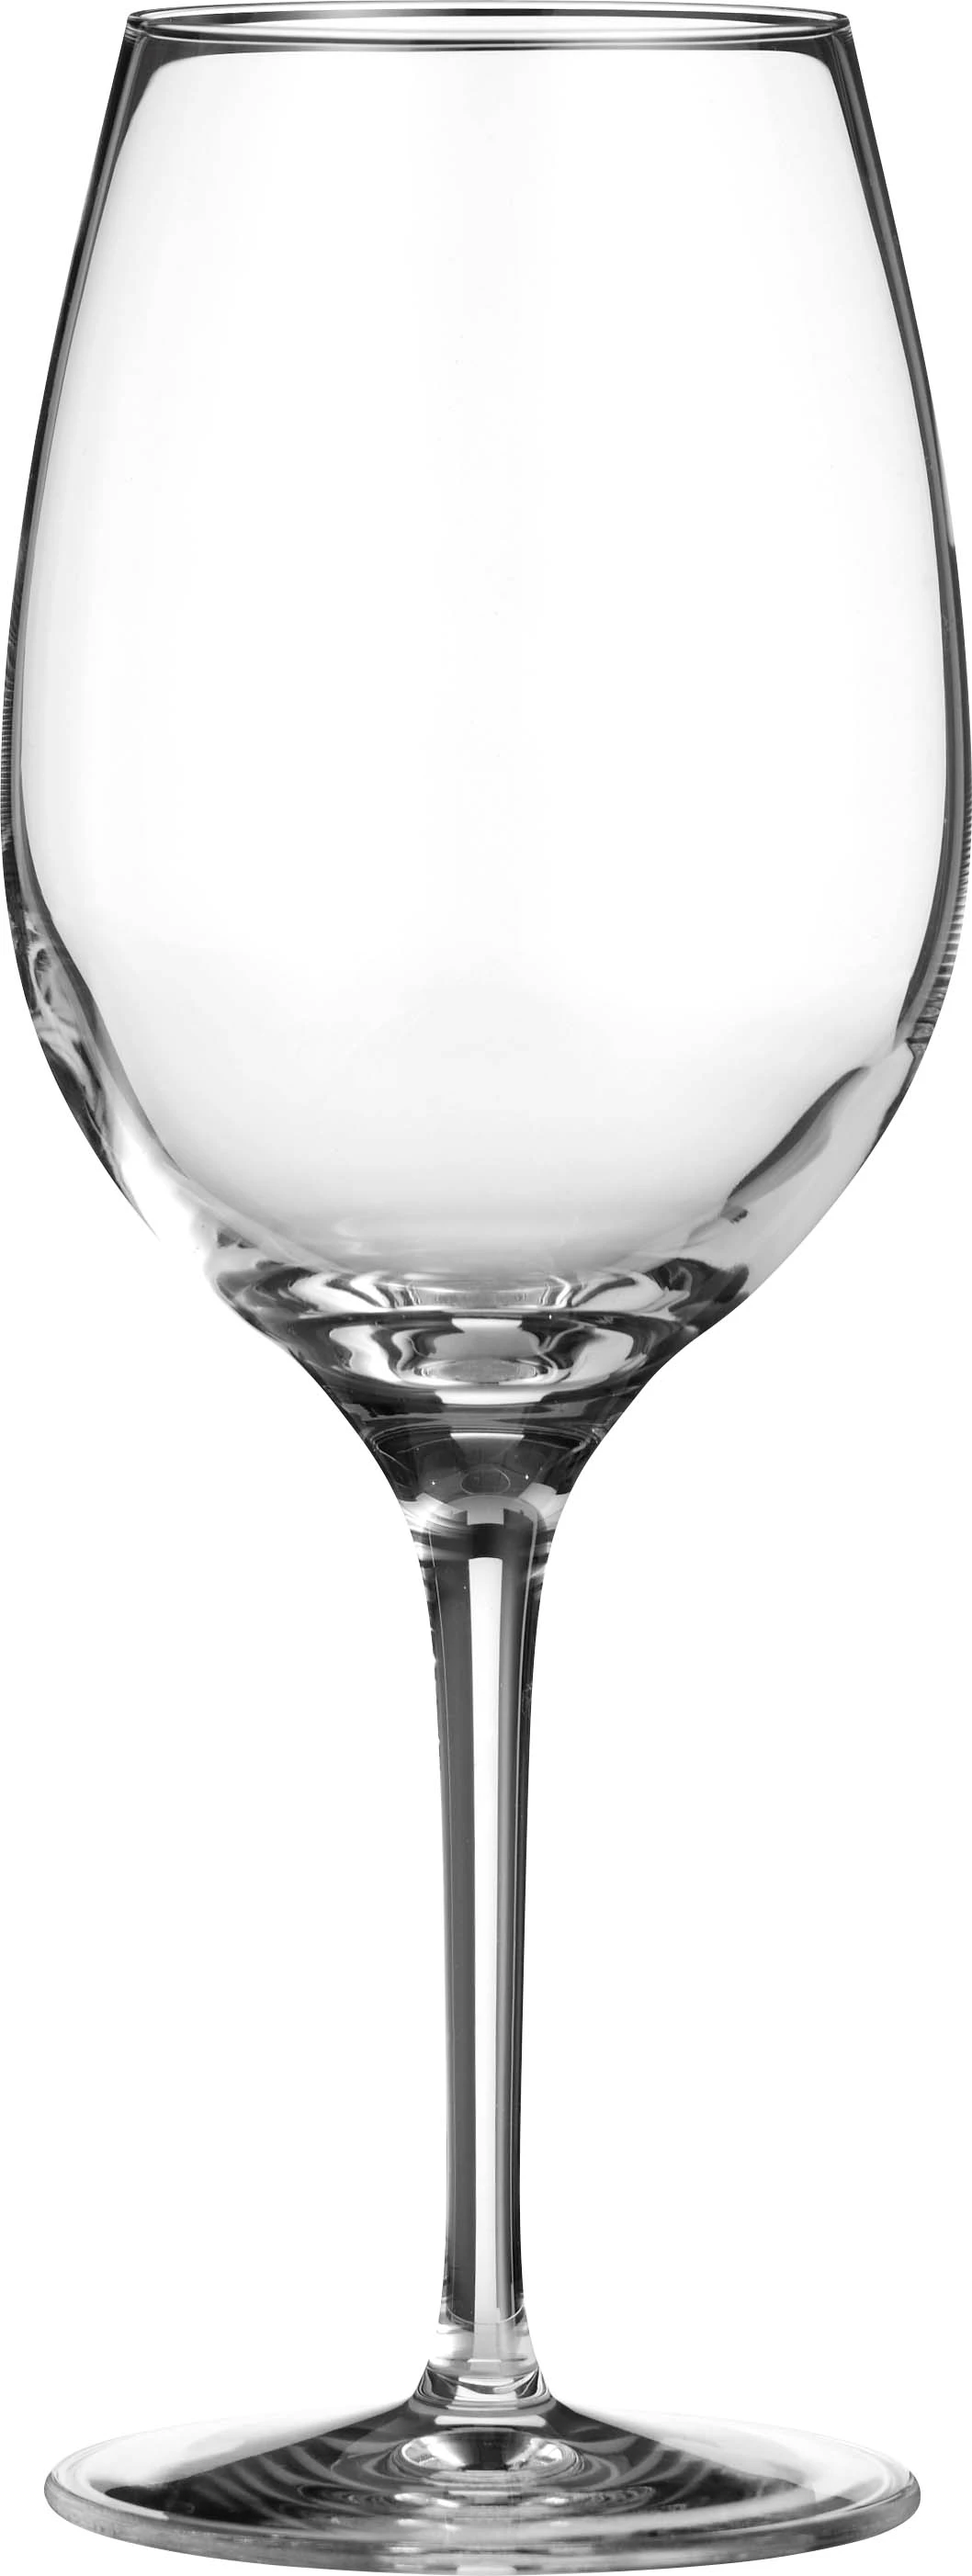 Zenz Penelope vinglas, 50 cl, H22 cm